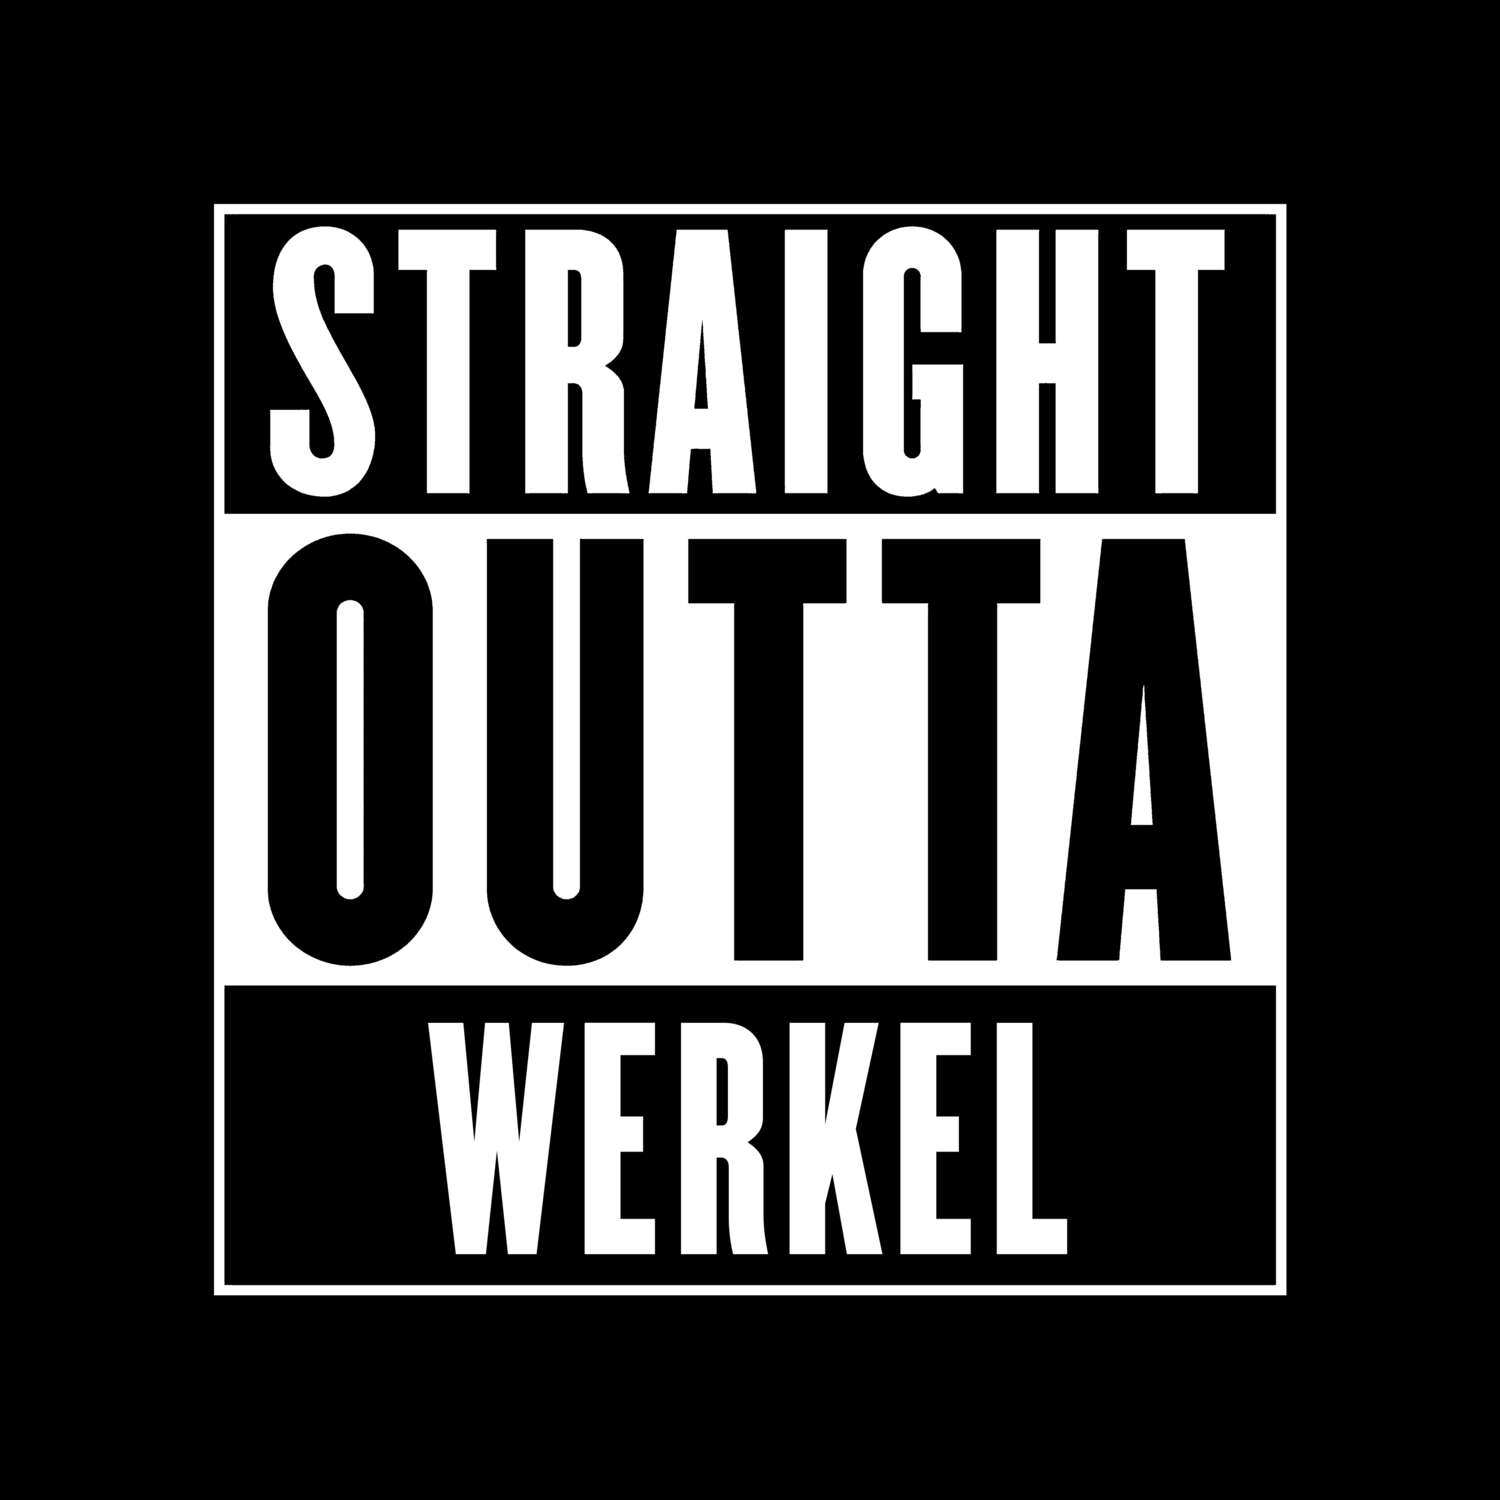 Werkel T-Shirt »Straight Outta«